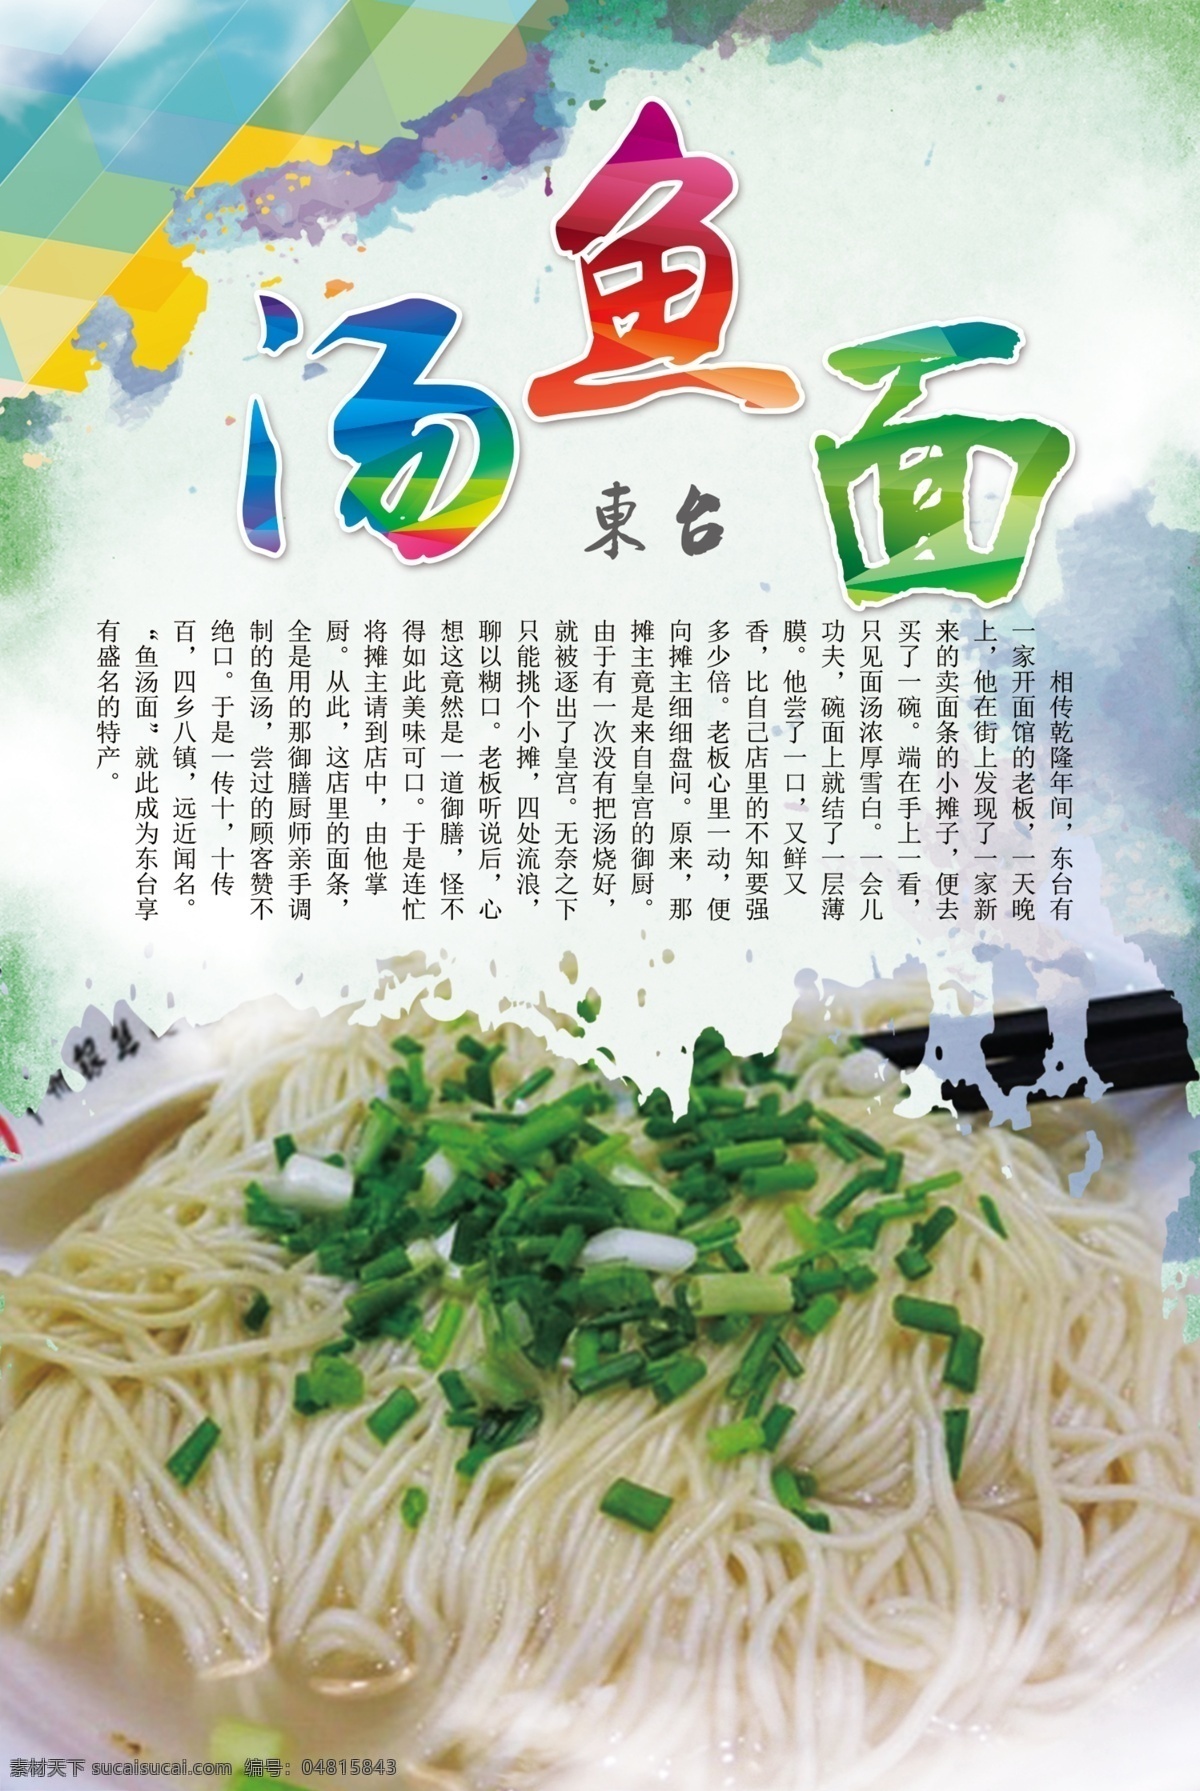 美食 菜单 菜品宣传单 菜谱 创意海报 文化宣传海报 鱼汤面